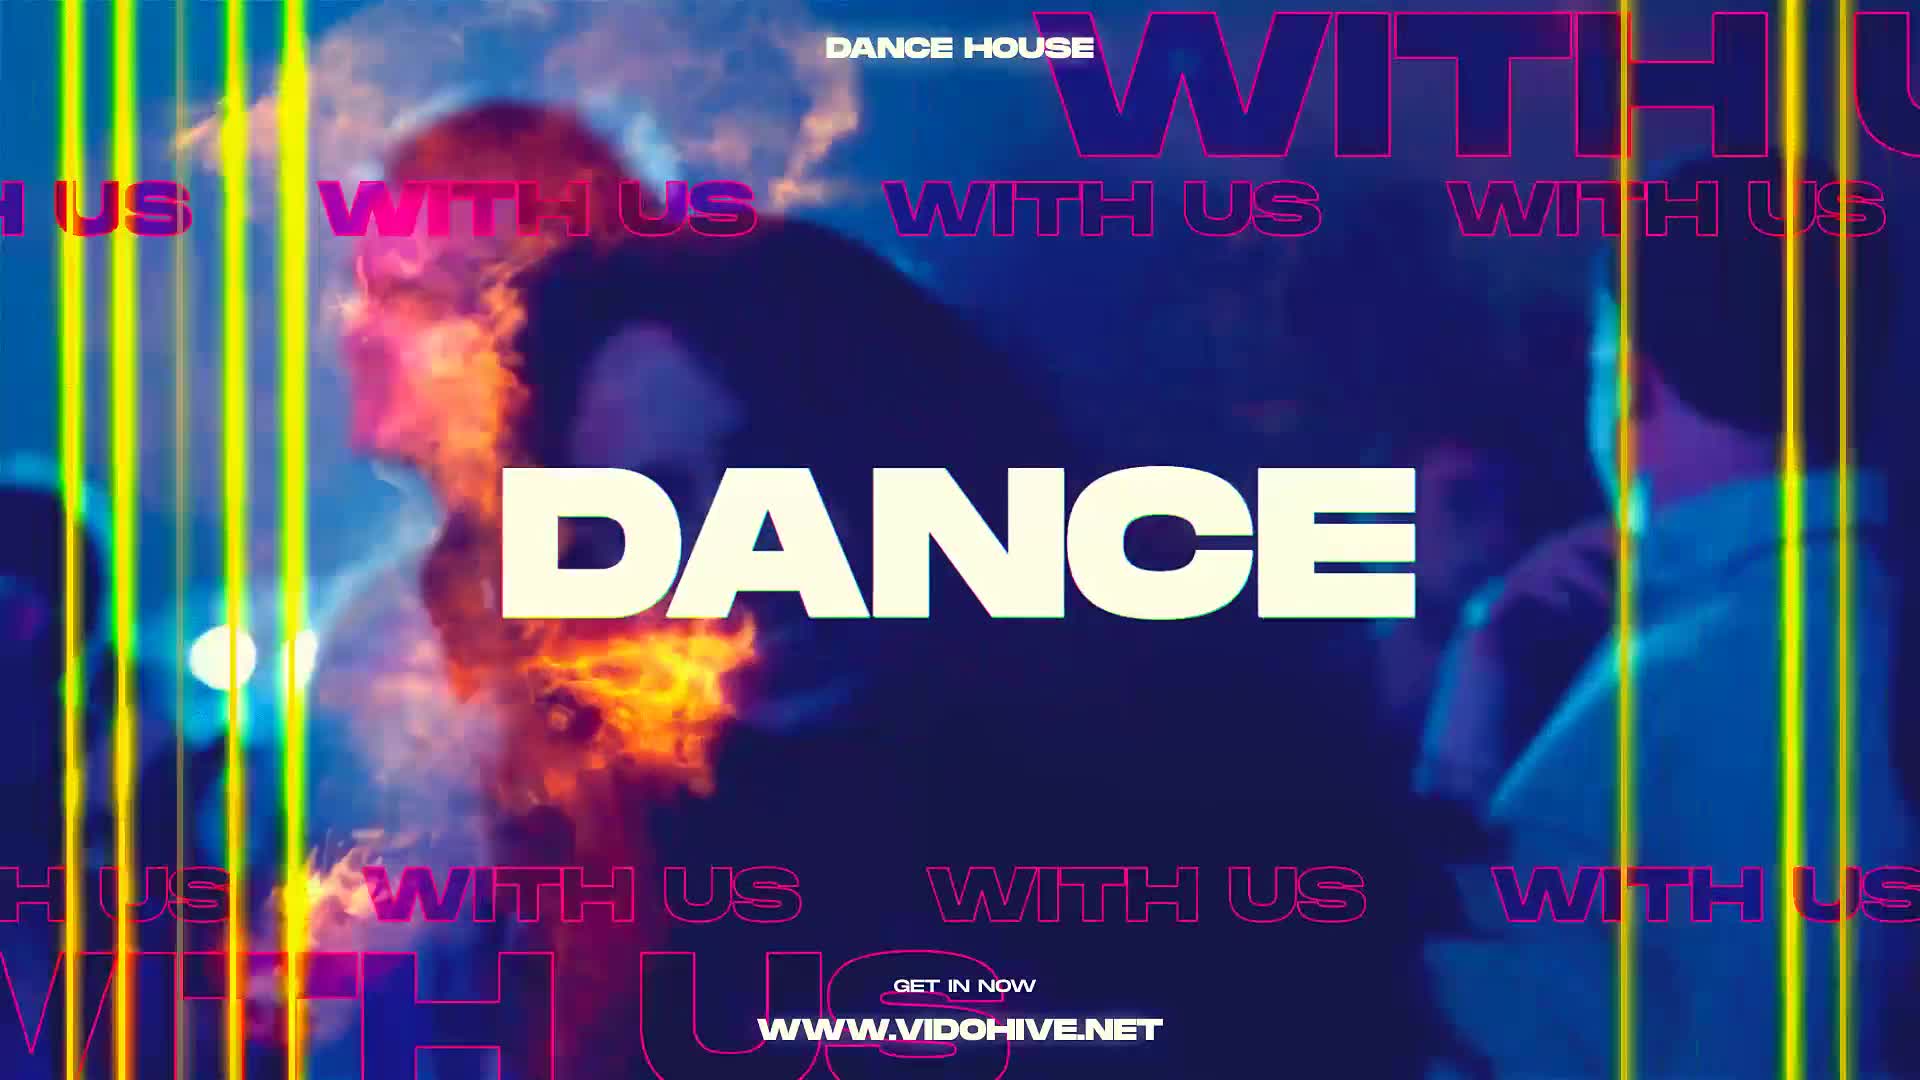 Fire Dance Party Promo Videohive 25891331 Premiere Pro Image 7